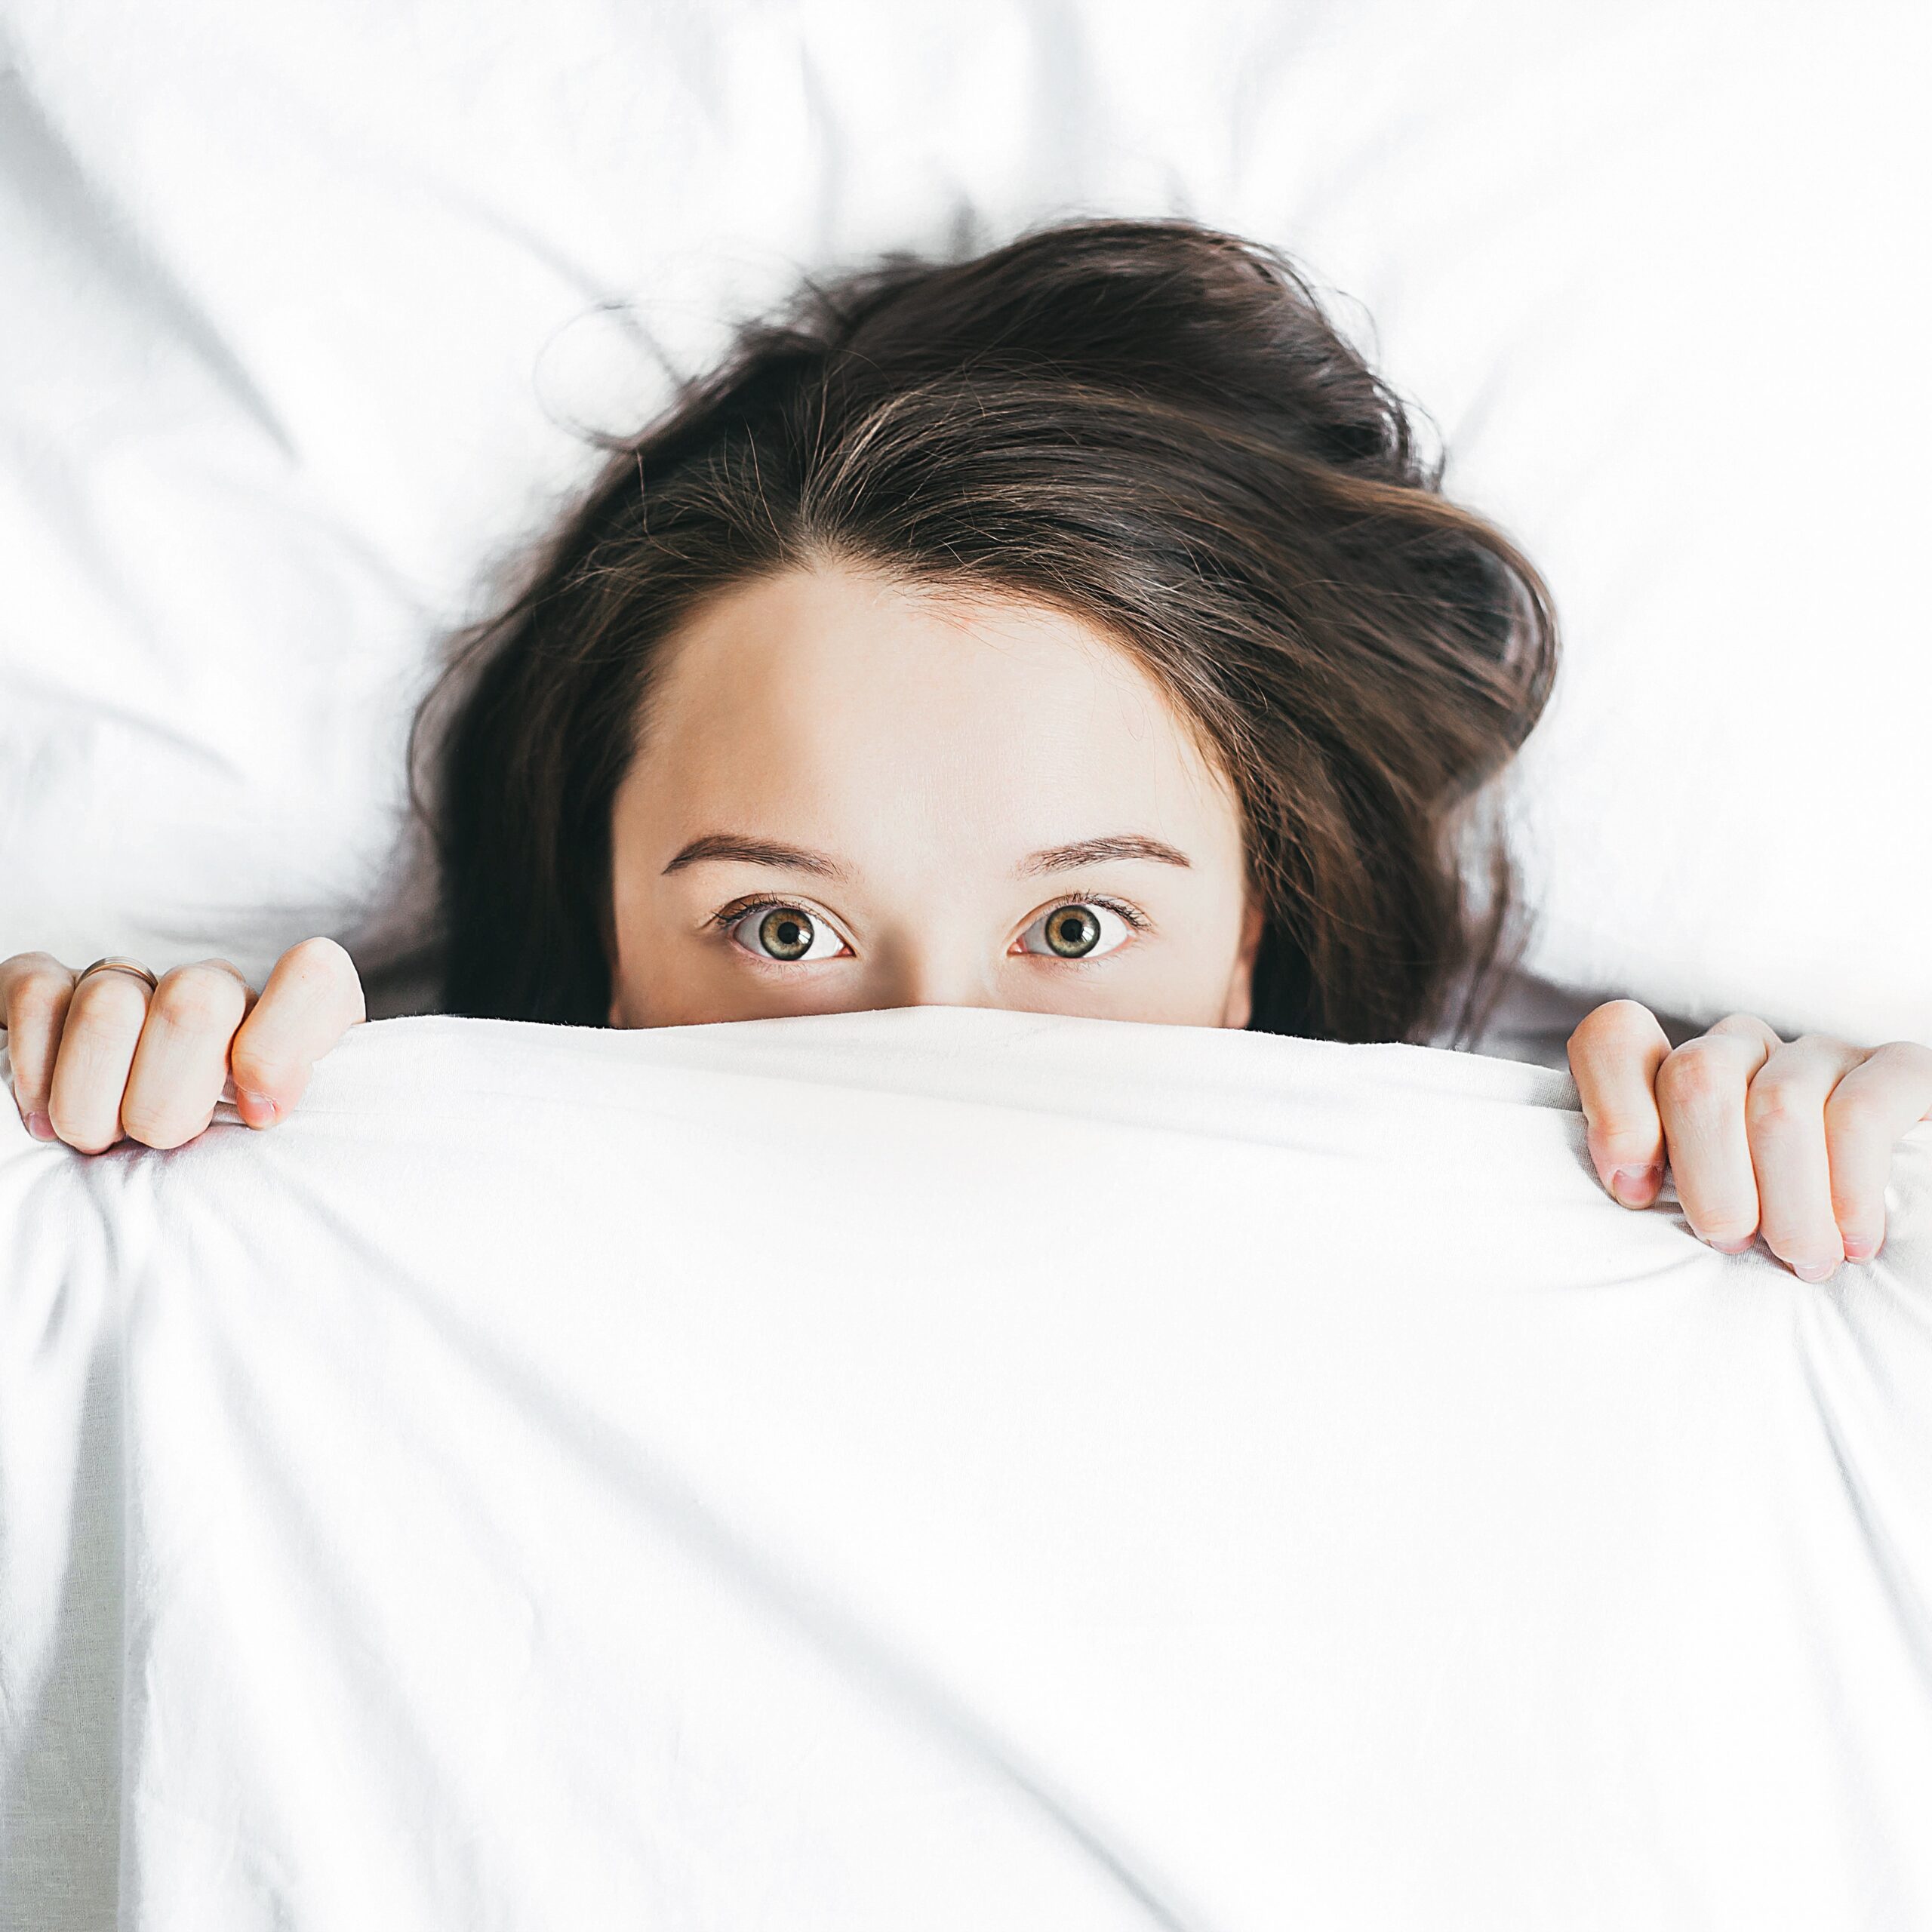 Sleep…are you getting enough sleep?